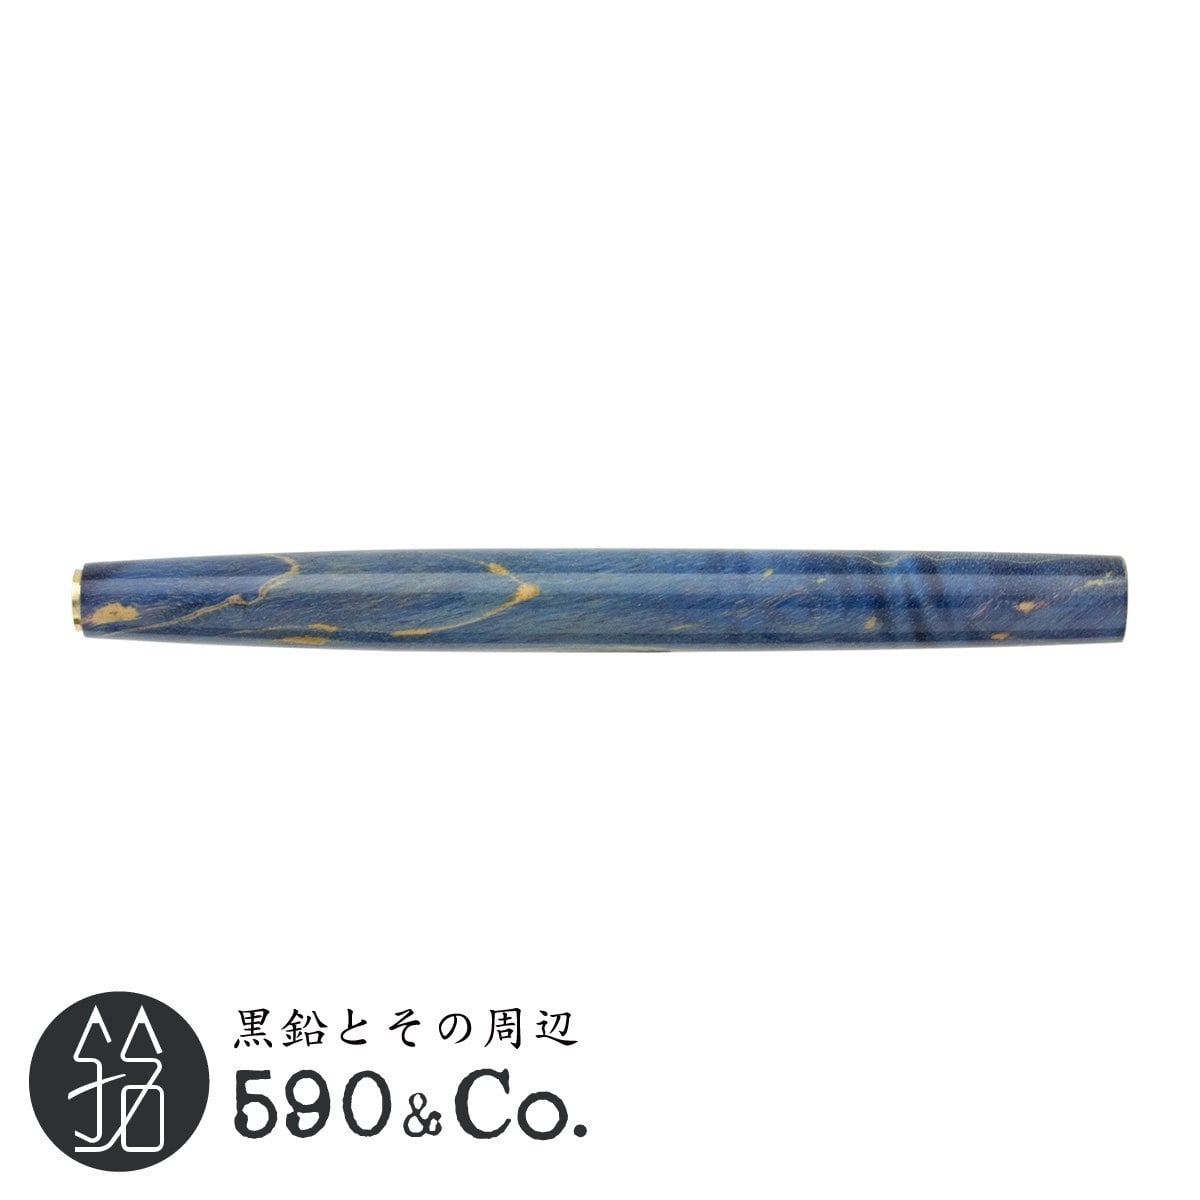 【緑陽工房】PGx スタビライズドウッド/丸軸(ブルー) 590Co.